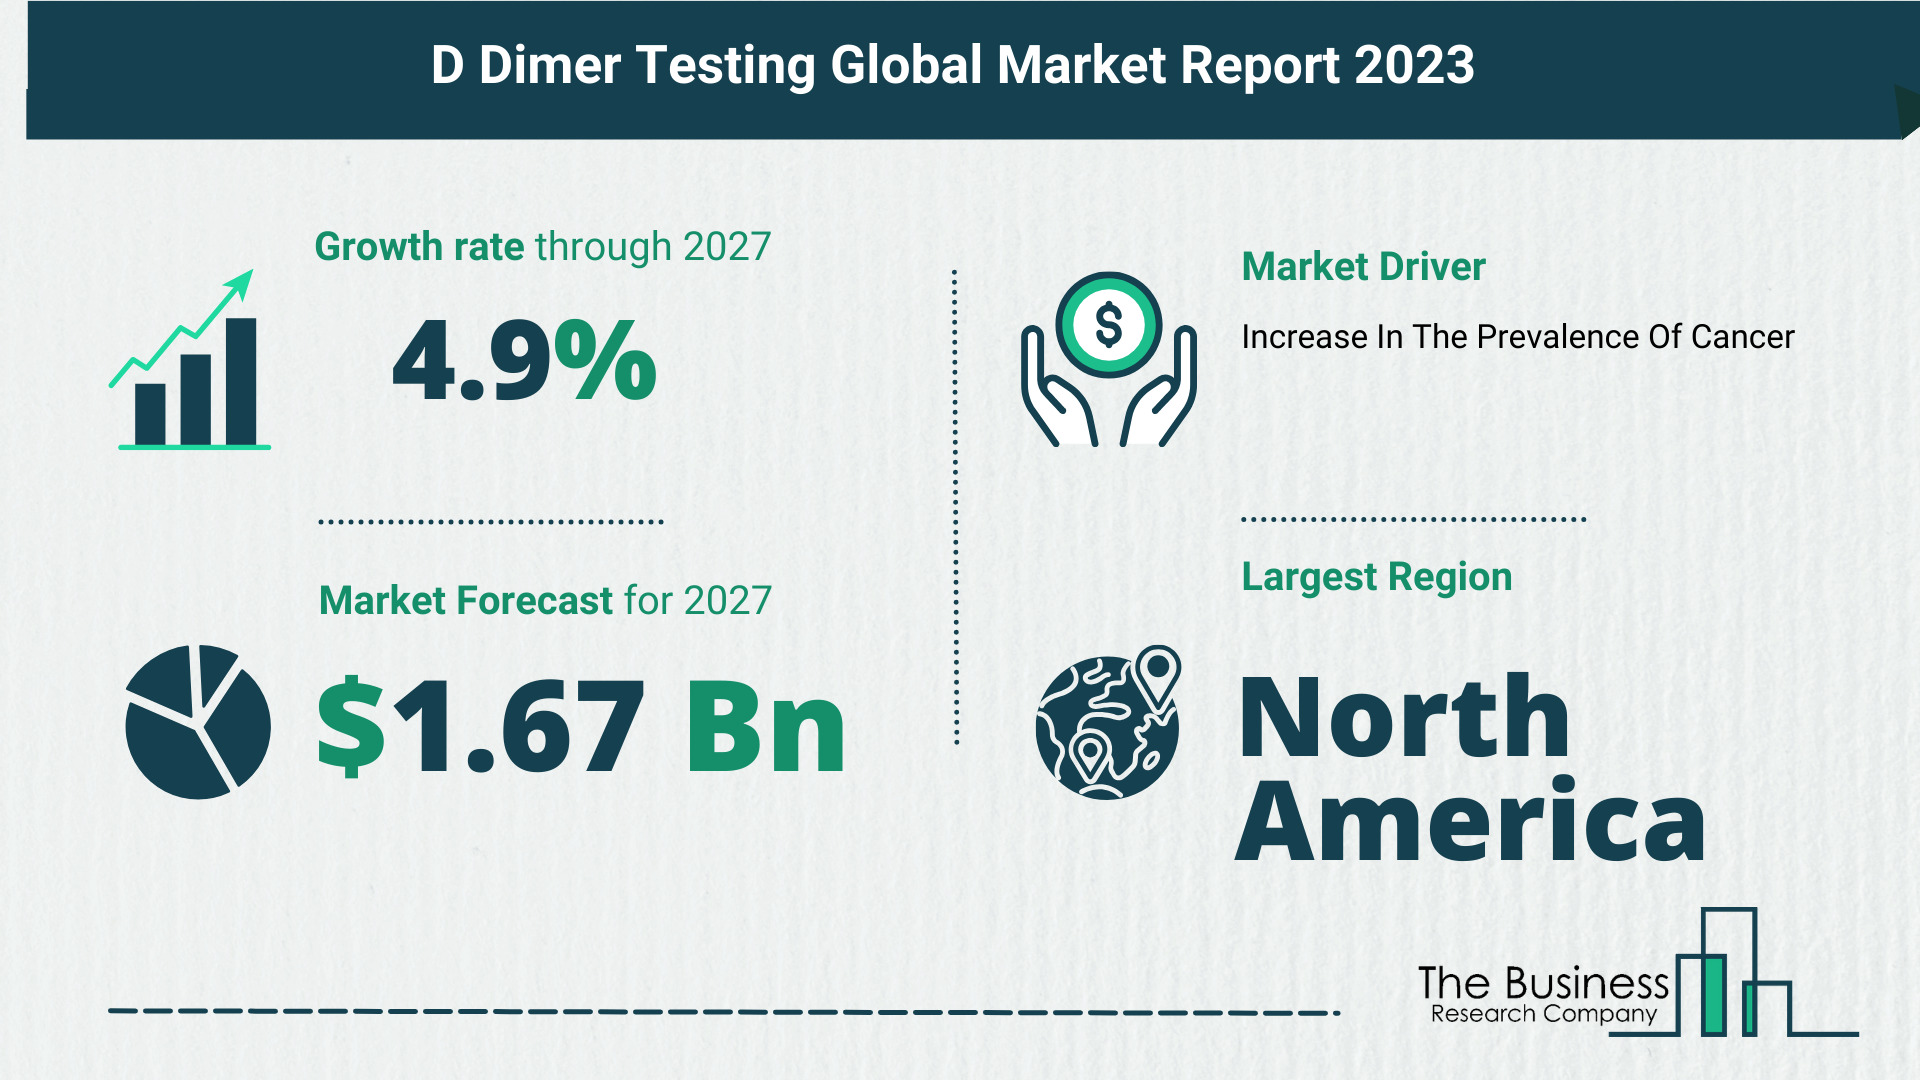 D Dimer Testing Market